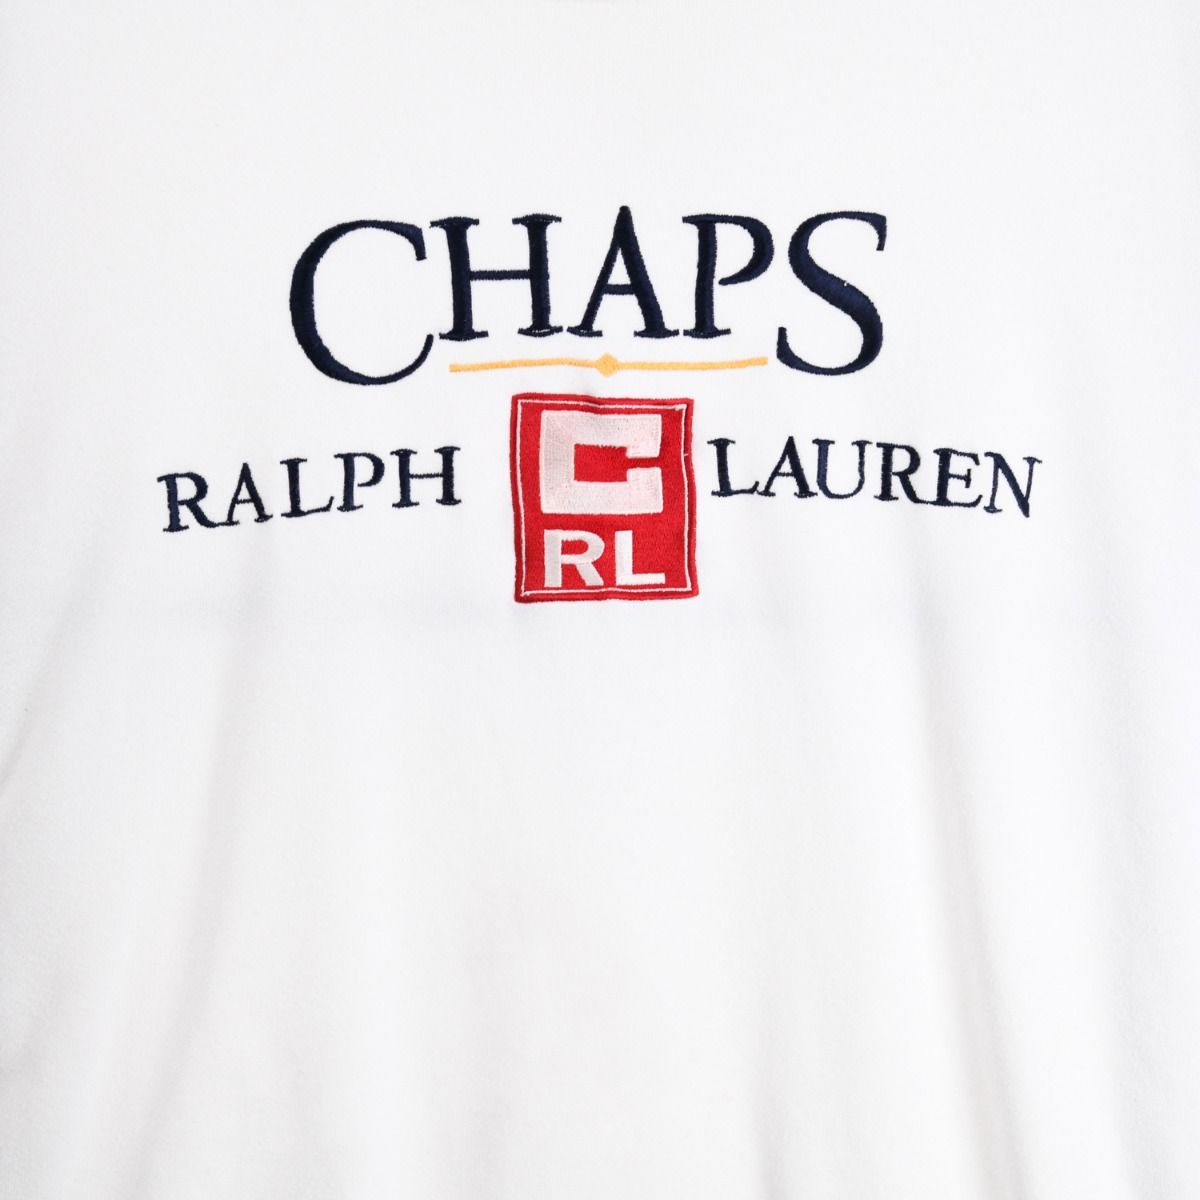 Ralph Lauren Chaps Sweatshirt